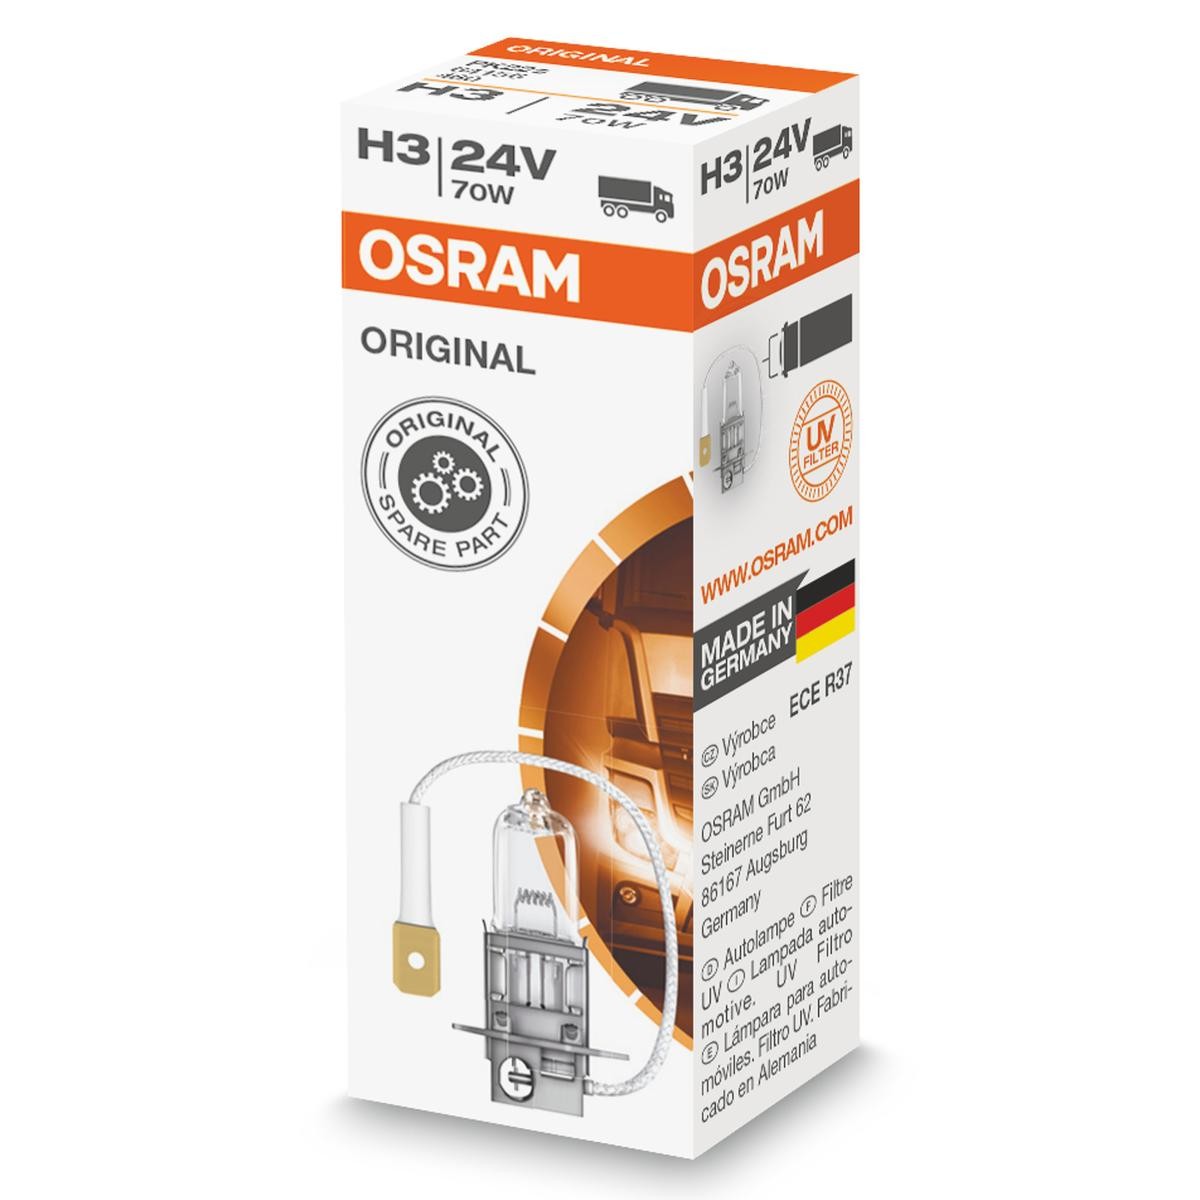 OSRAM ORIGINAL 64156 Headlight bulb H3 24V 70W3200K Halogen